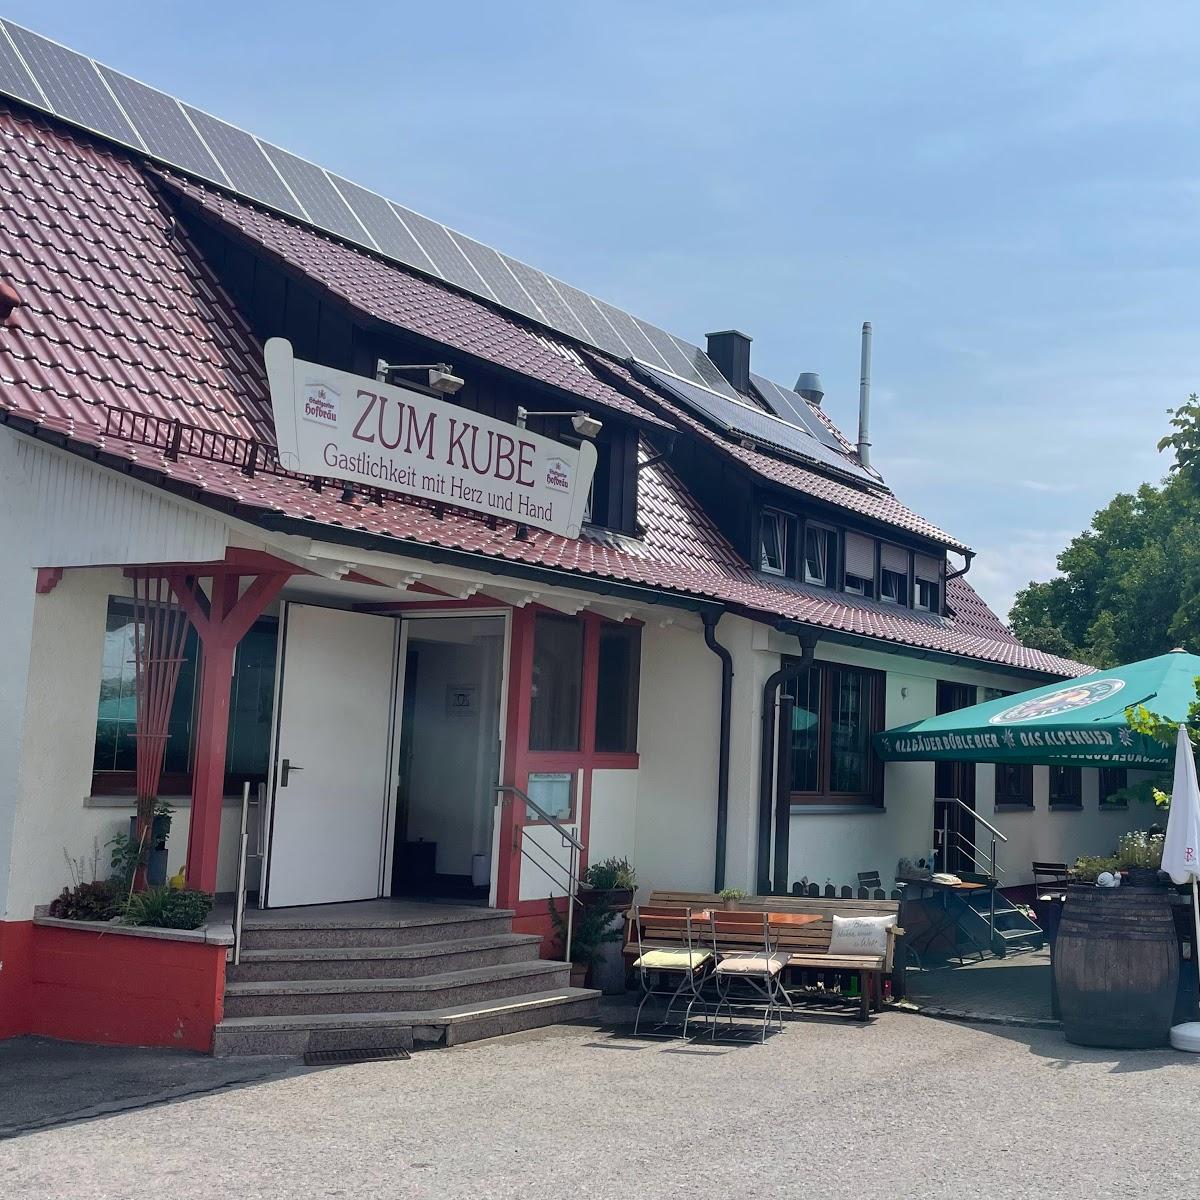 Restaurant "Thomas Kube Gasthaus zum Kube" in Aspach